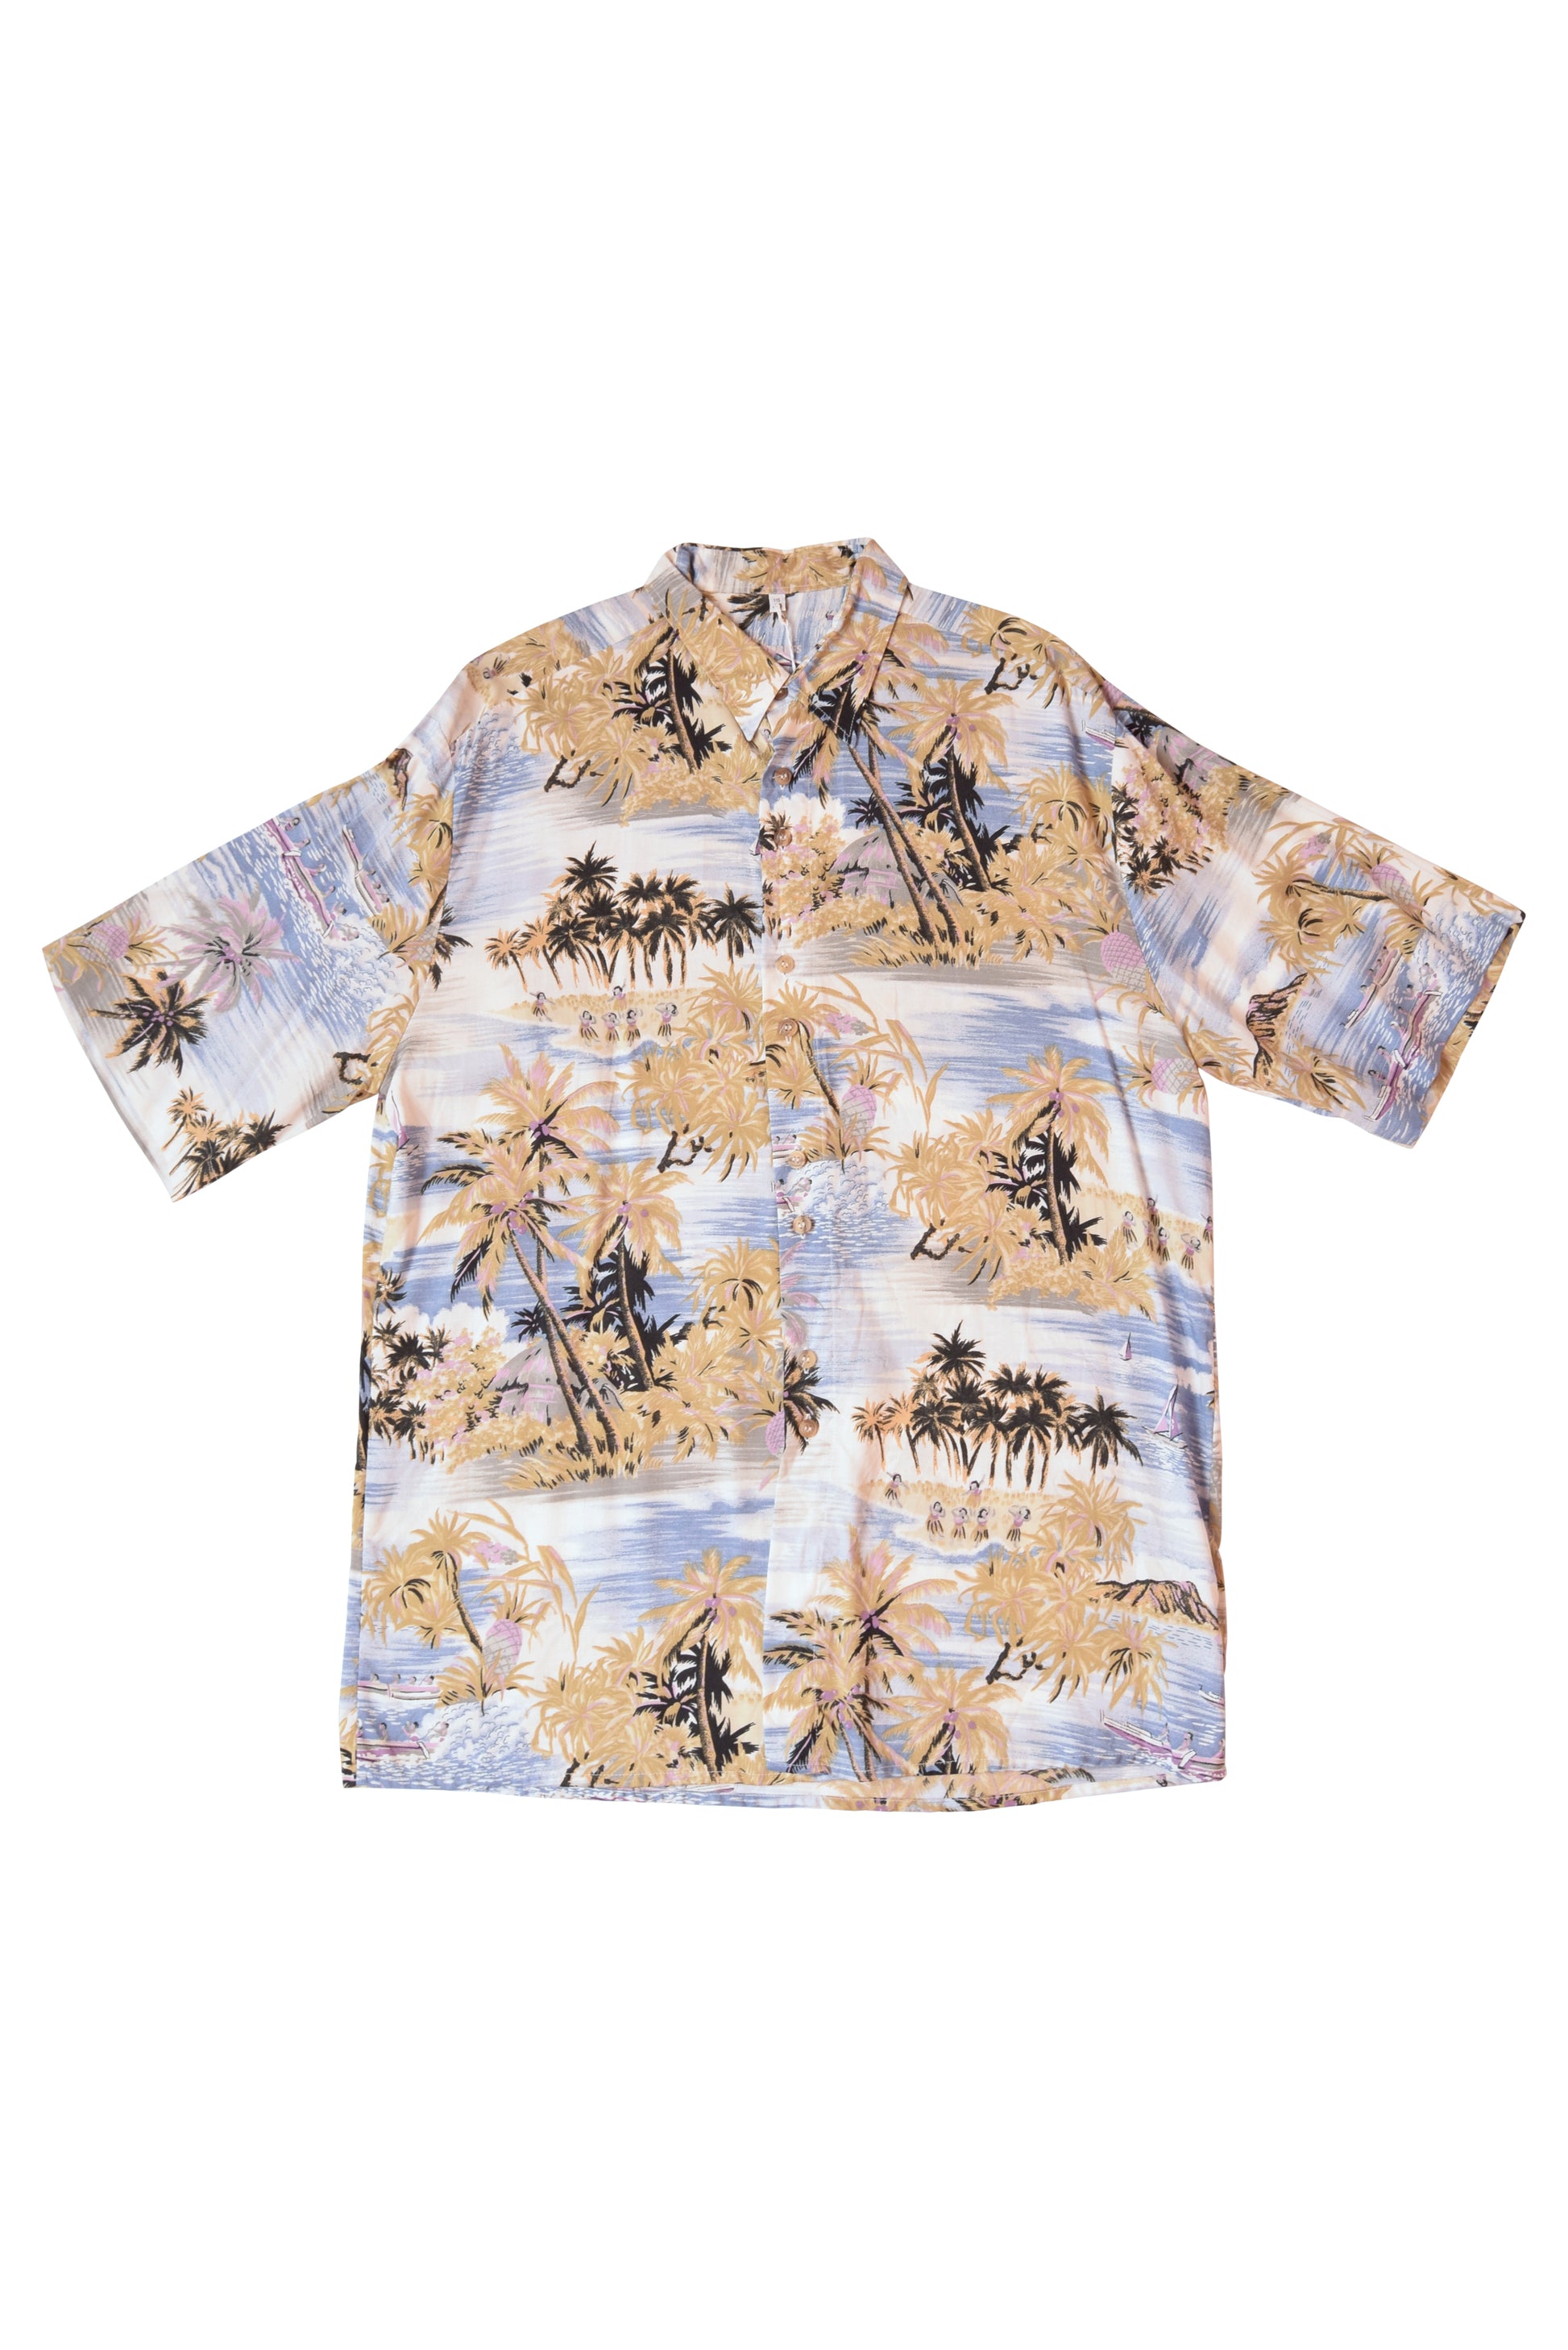 Vintage Tropical Shirt Size M-L